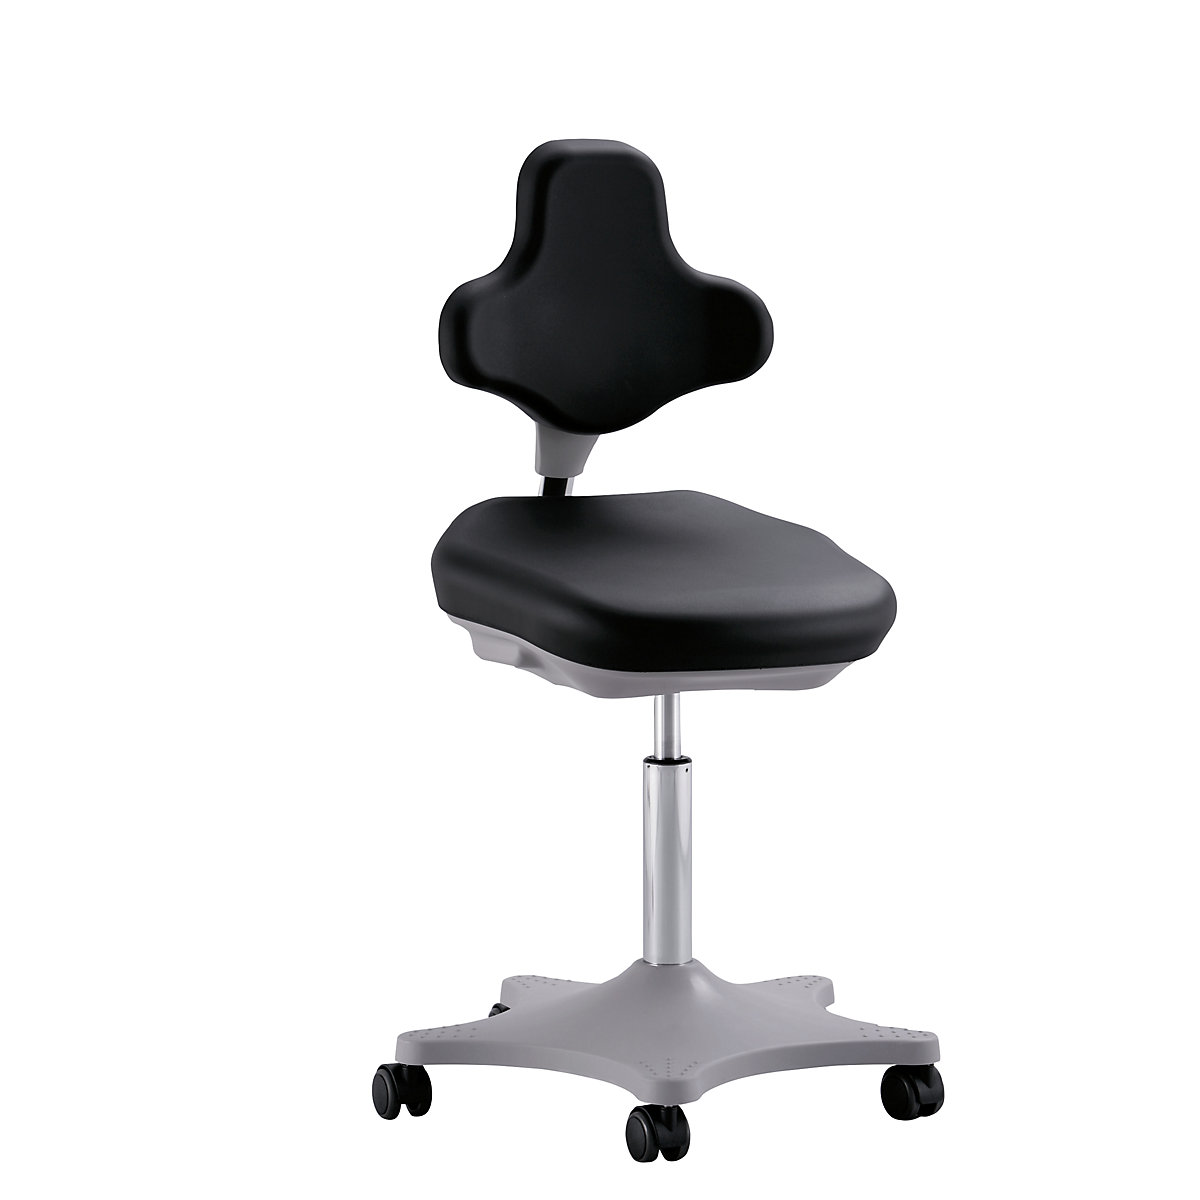 Laboratorijska radna okretna stolica LABSTER – bimos, namještanje visine 460 – 650 mm, s kotačima, površina za sjedenje i naslon za leđa od PU pjene, u crnoj boji-3